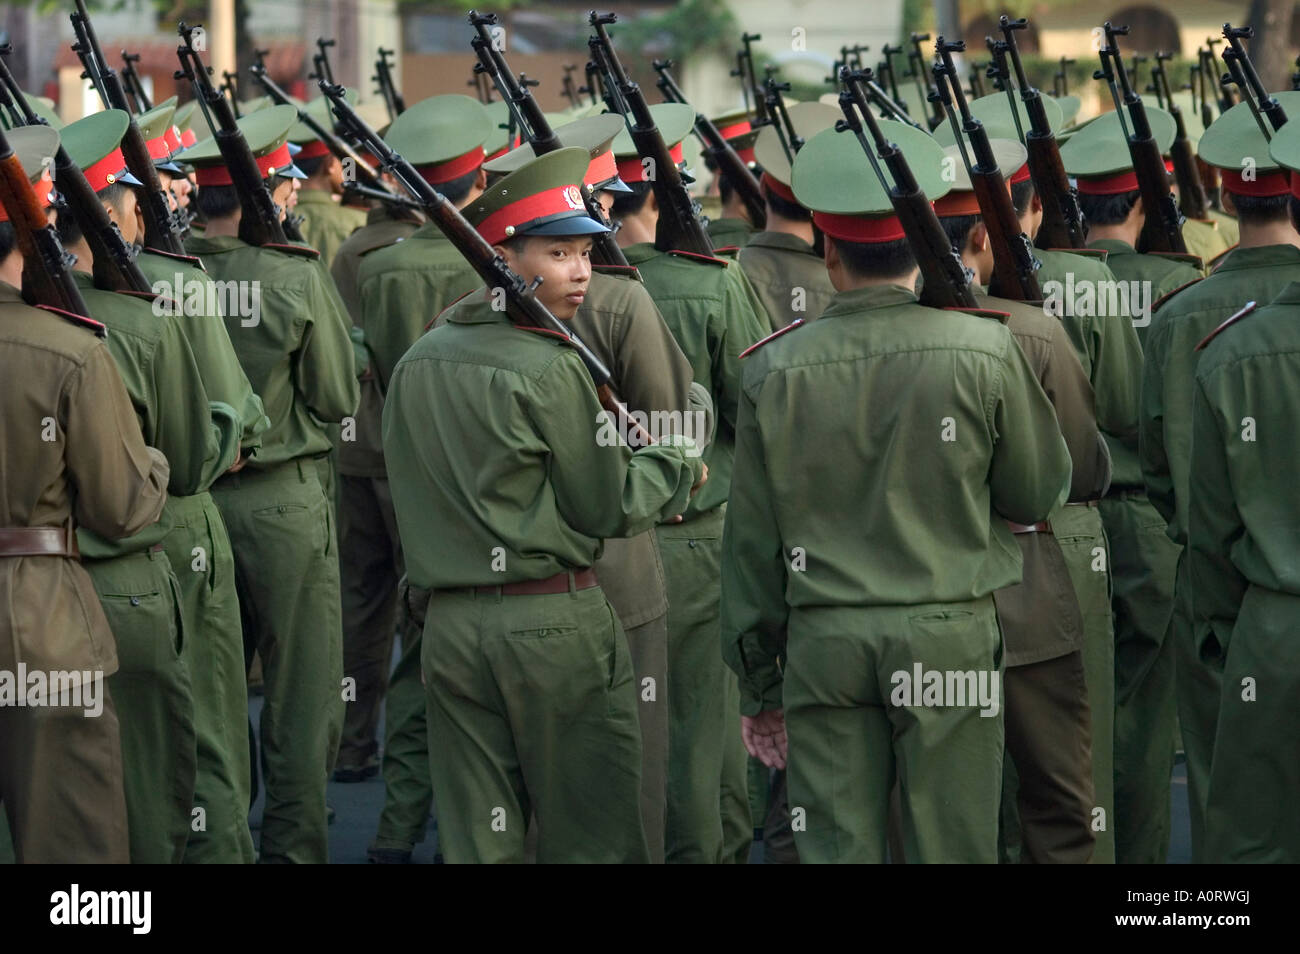 Parade militaire Ho Chi Minh City Saigon Vietnam Asie Asie du sud-est Banque D'Images